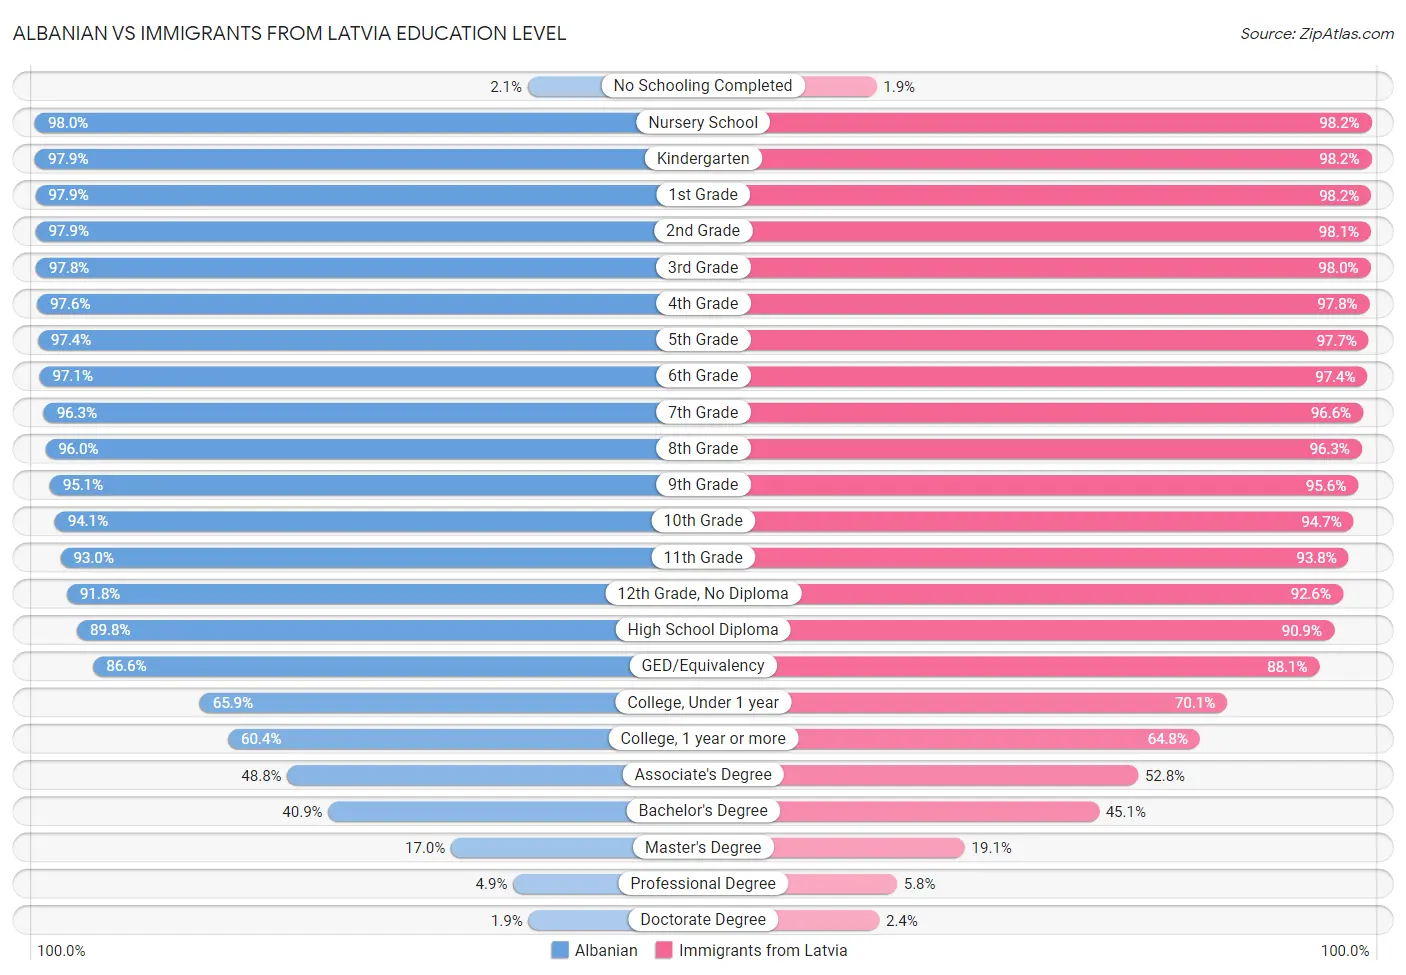 Albanian vs Immigrants from Latvia Education Level